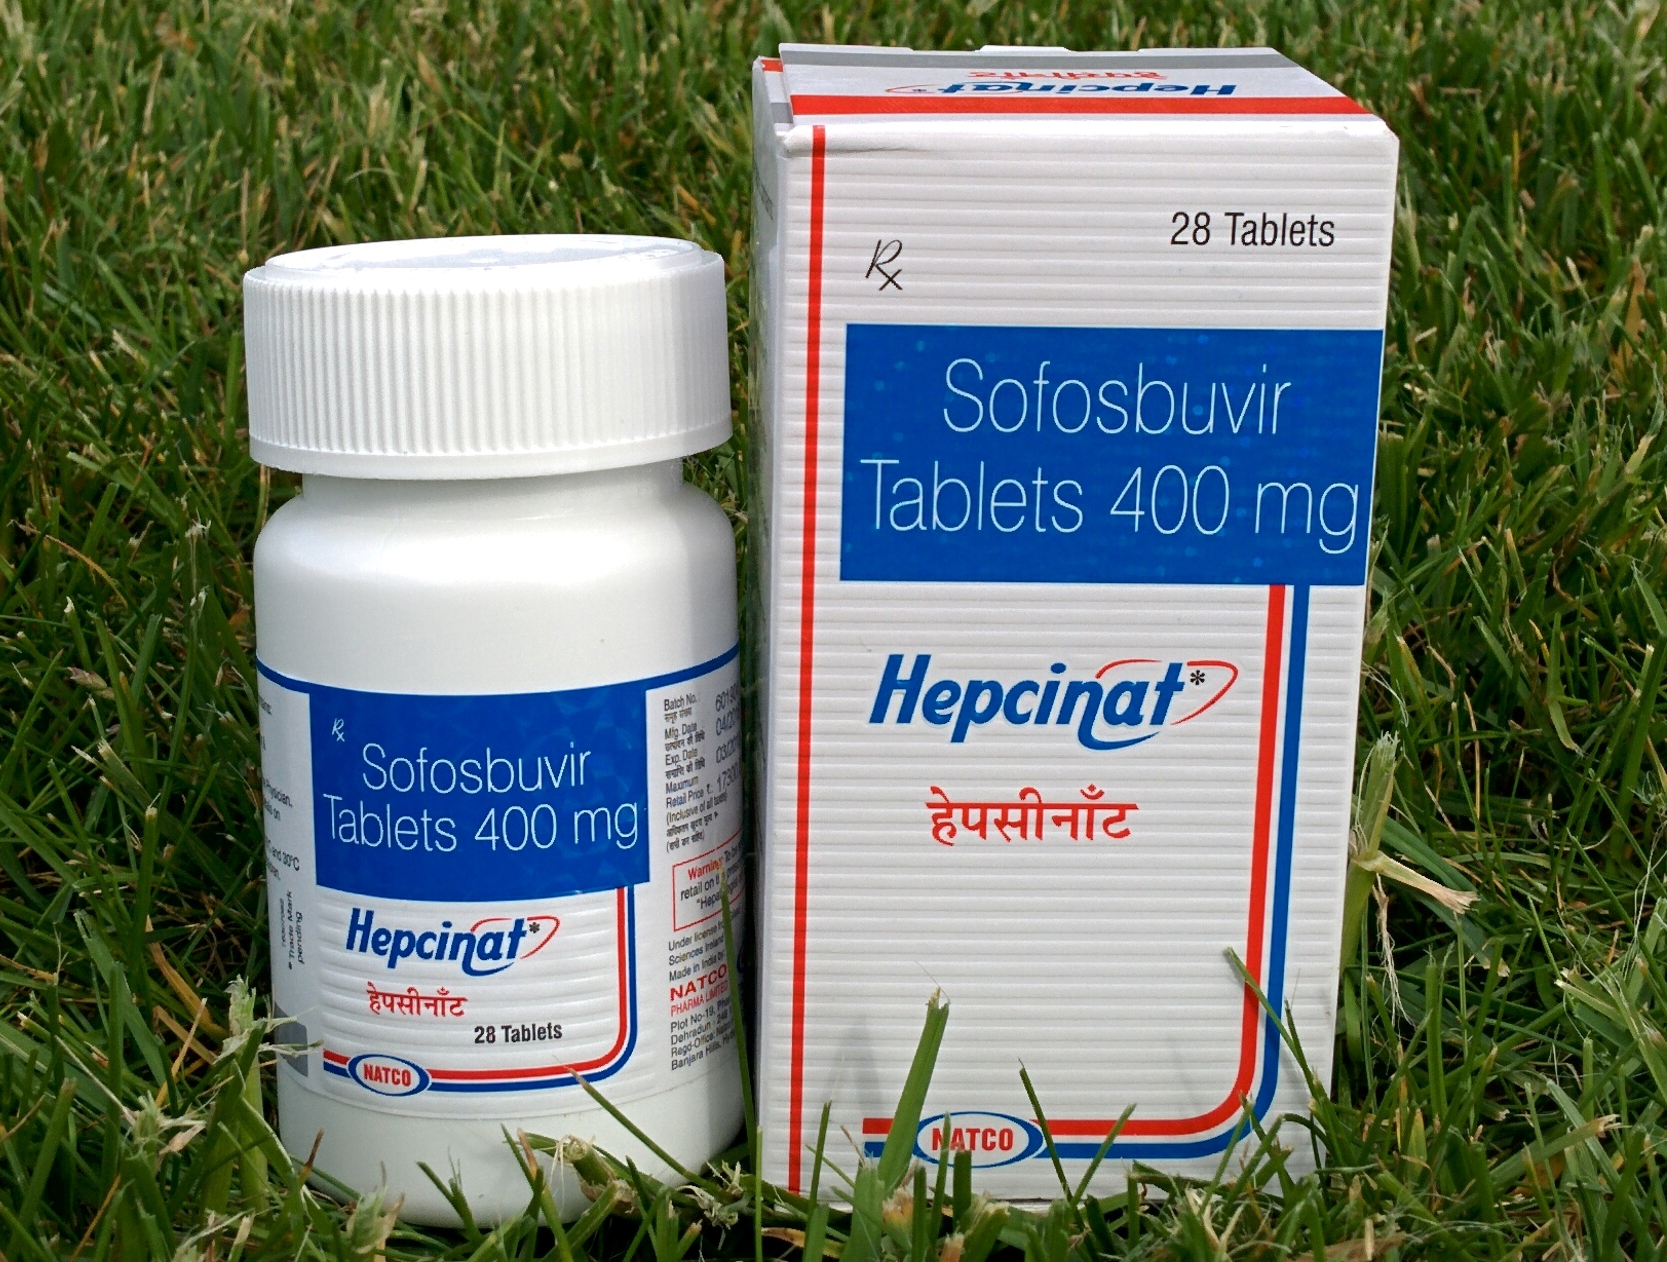 Софосбувир - новый препарат для лечения гепатита, обладает высокой противовирусной активностью